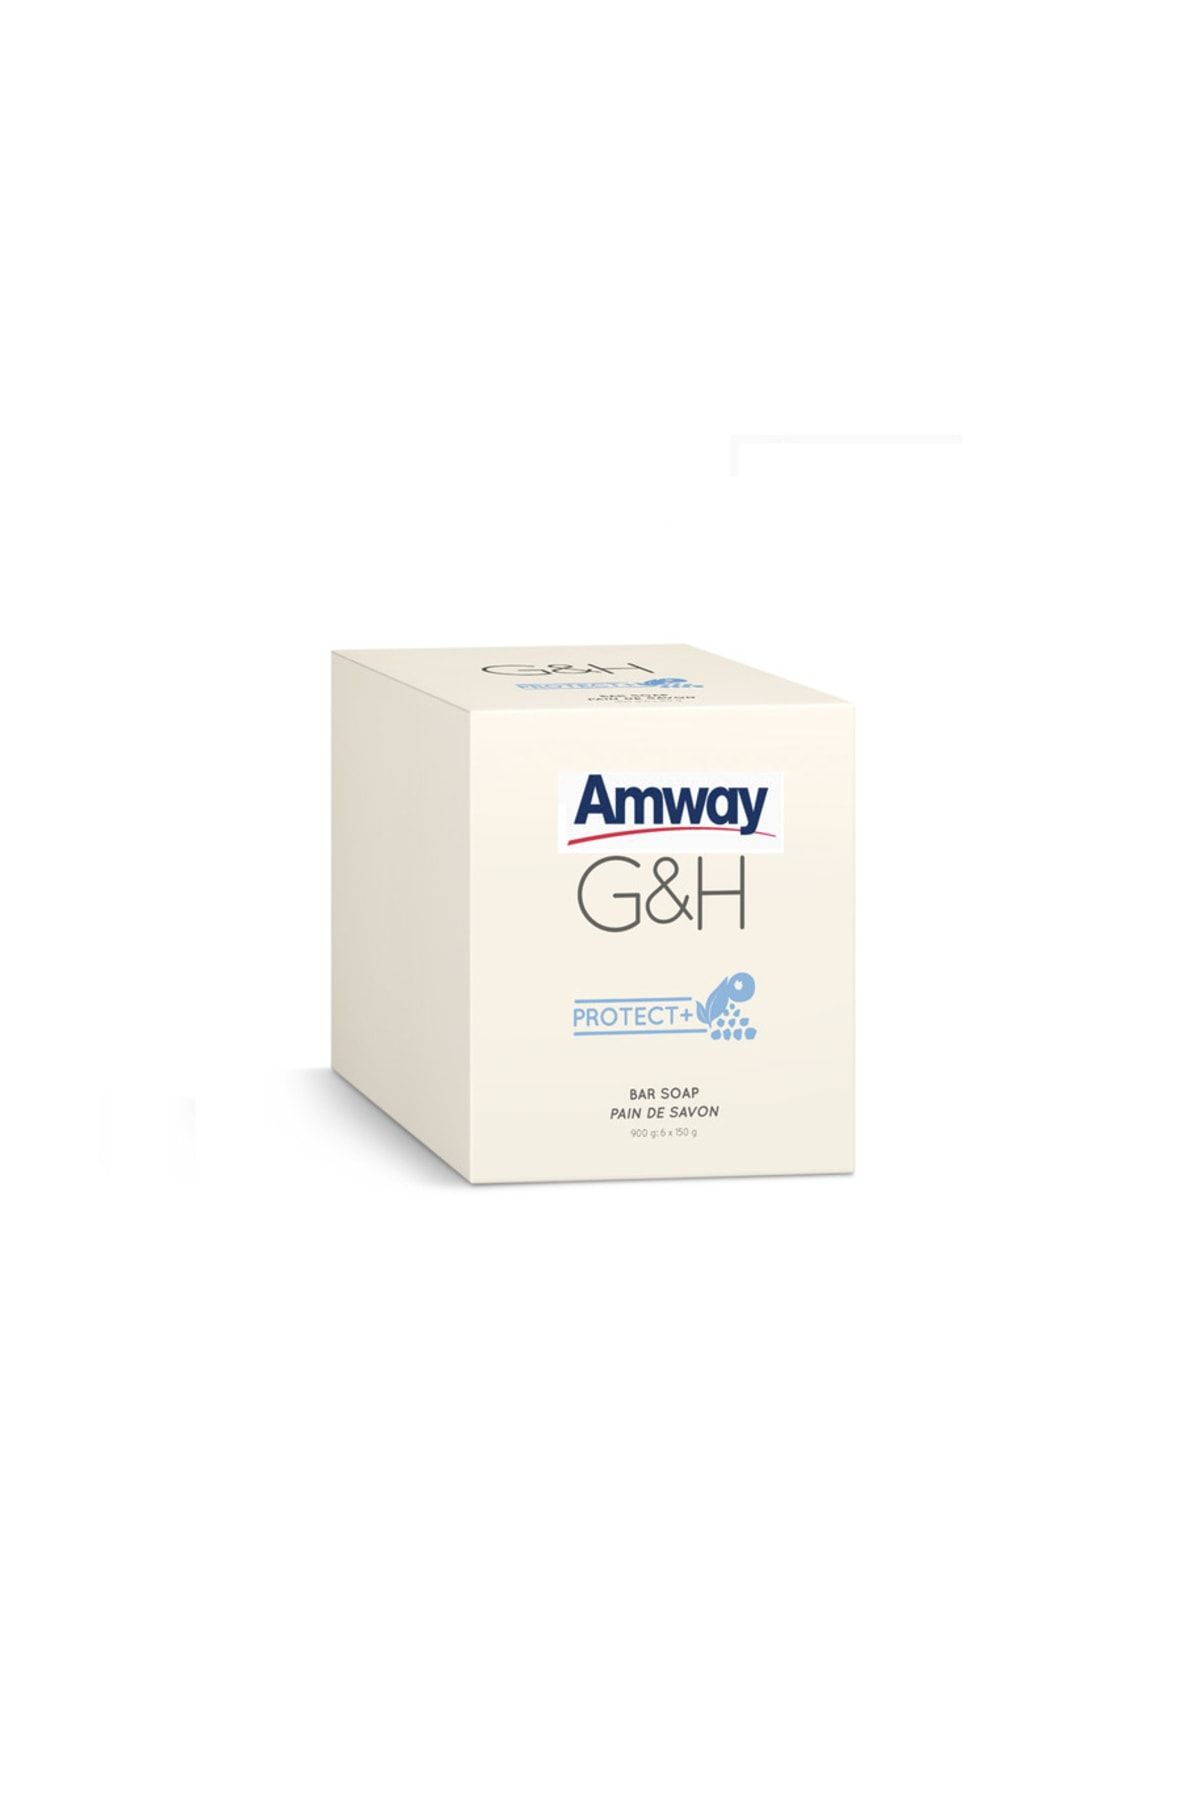 Amway Sabun - G&h Protect+™ Birim: 6 X 150 G Bar